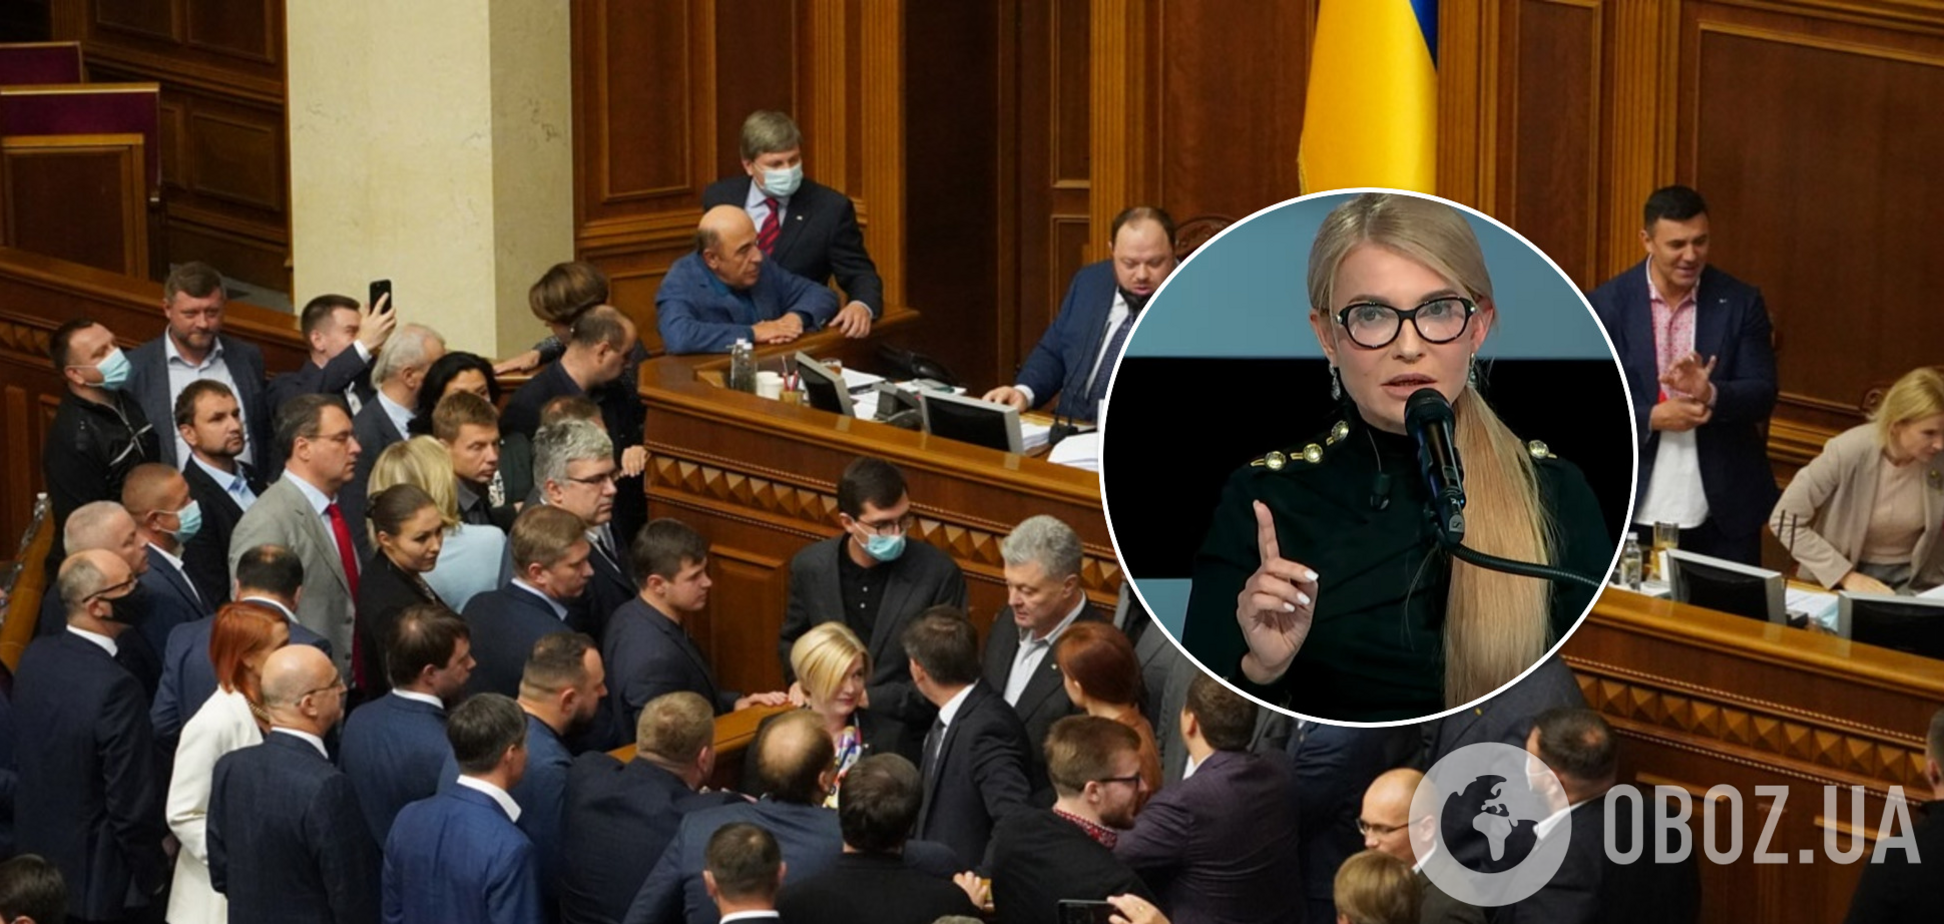 Тимошенко – про ухвалення закону про олігархів: у КСУ є залізобетонні підстави скасувати його